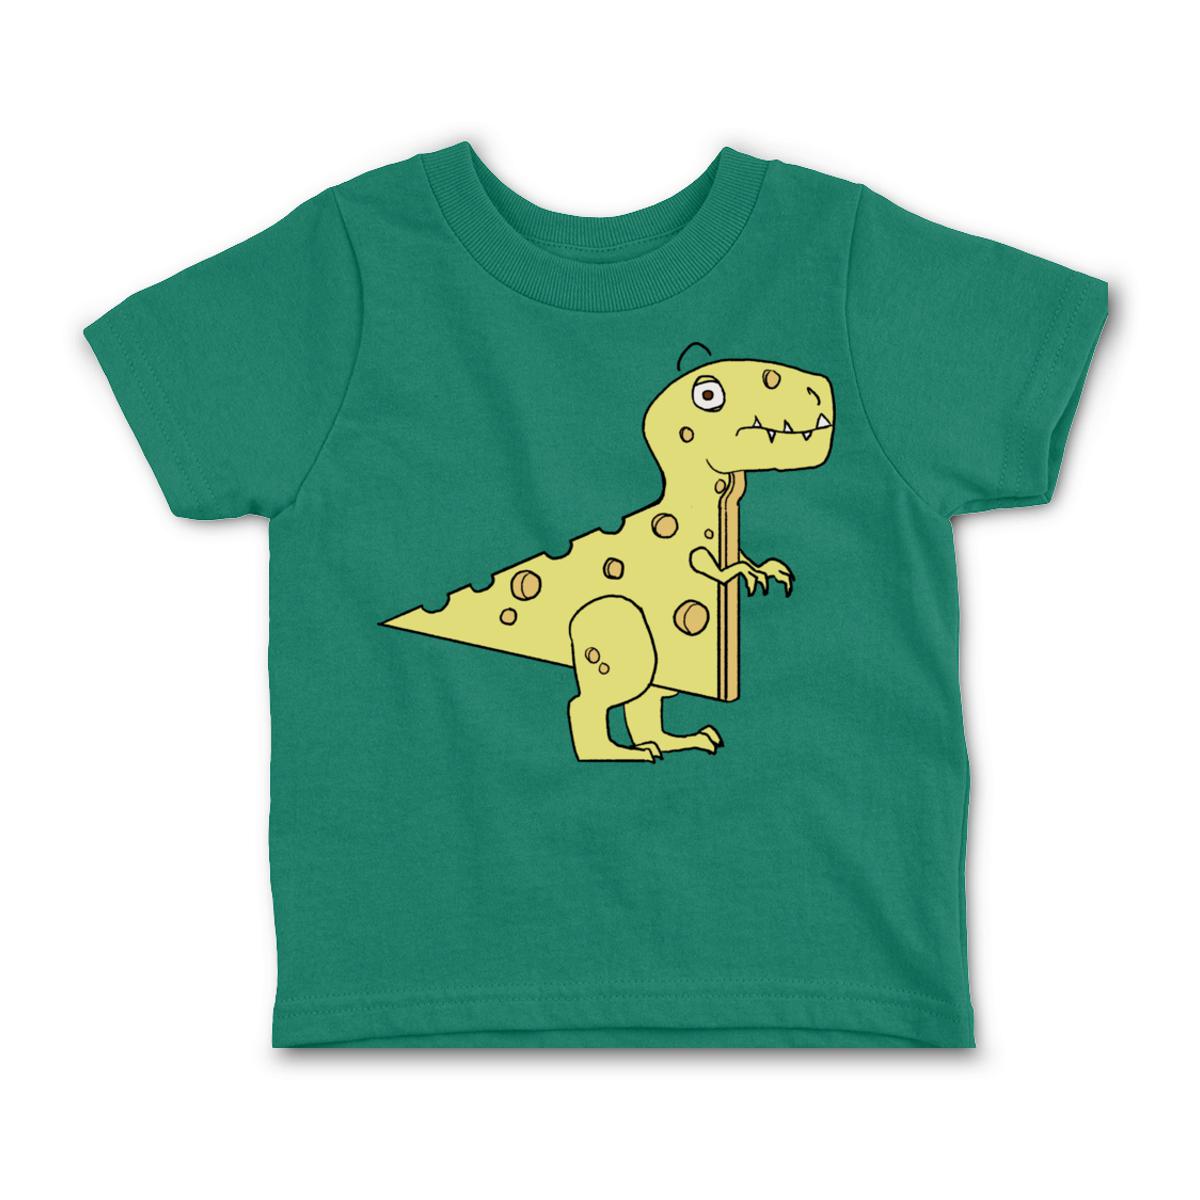 Cheeseosaurus Rex Toddler Tee 56T kelly